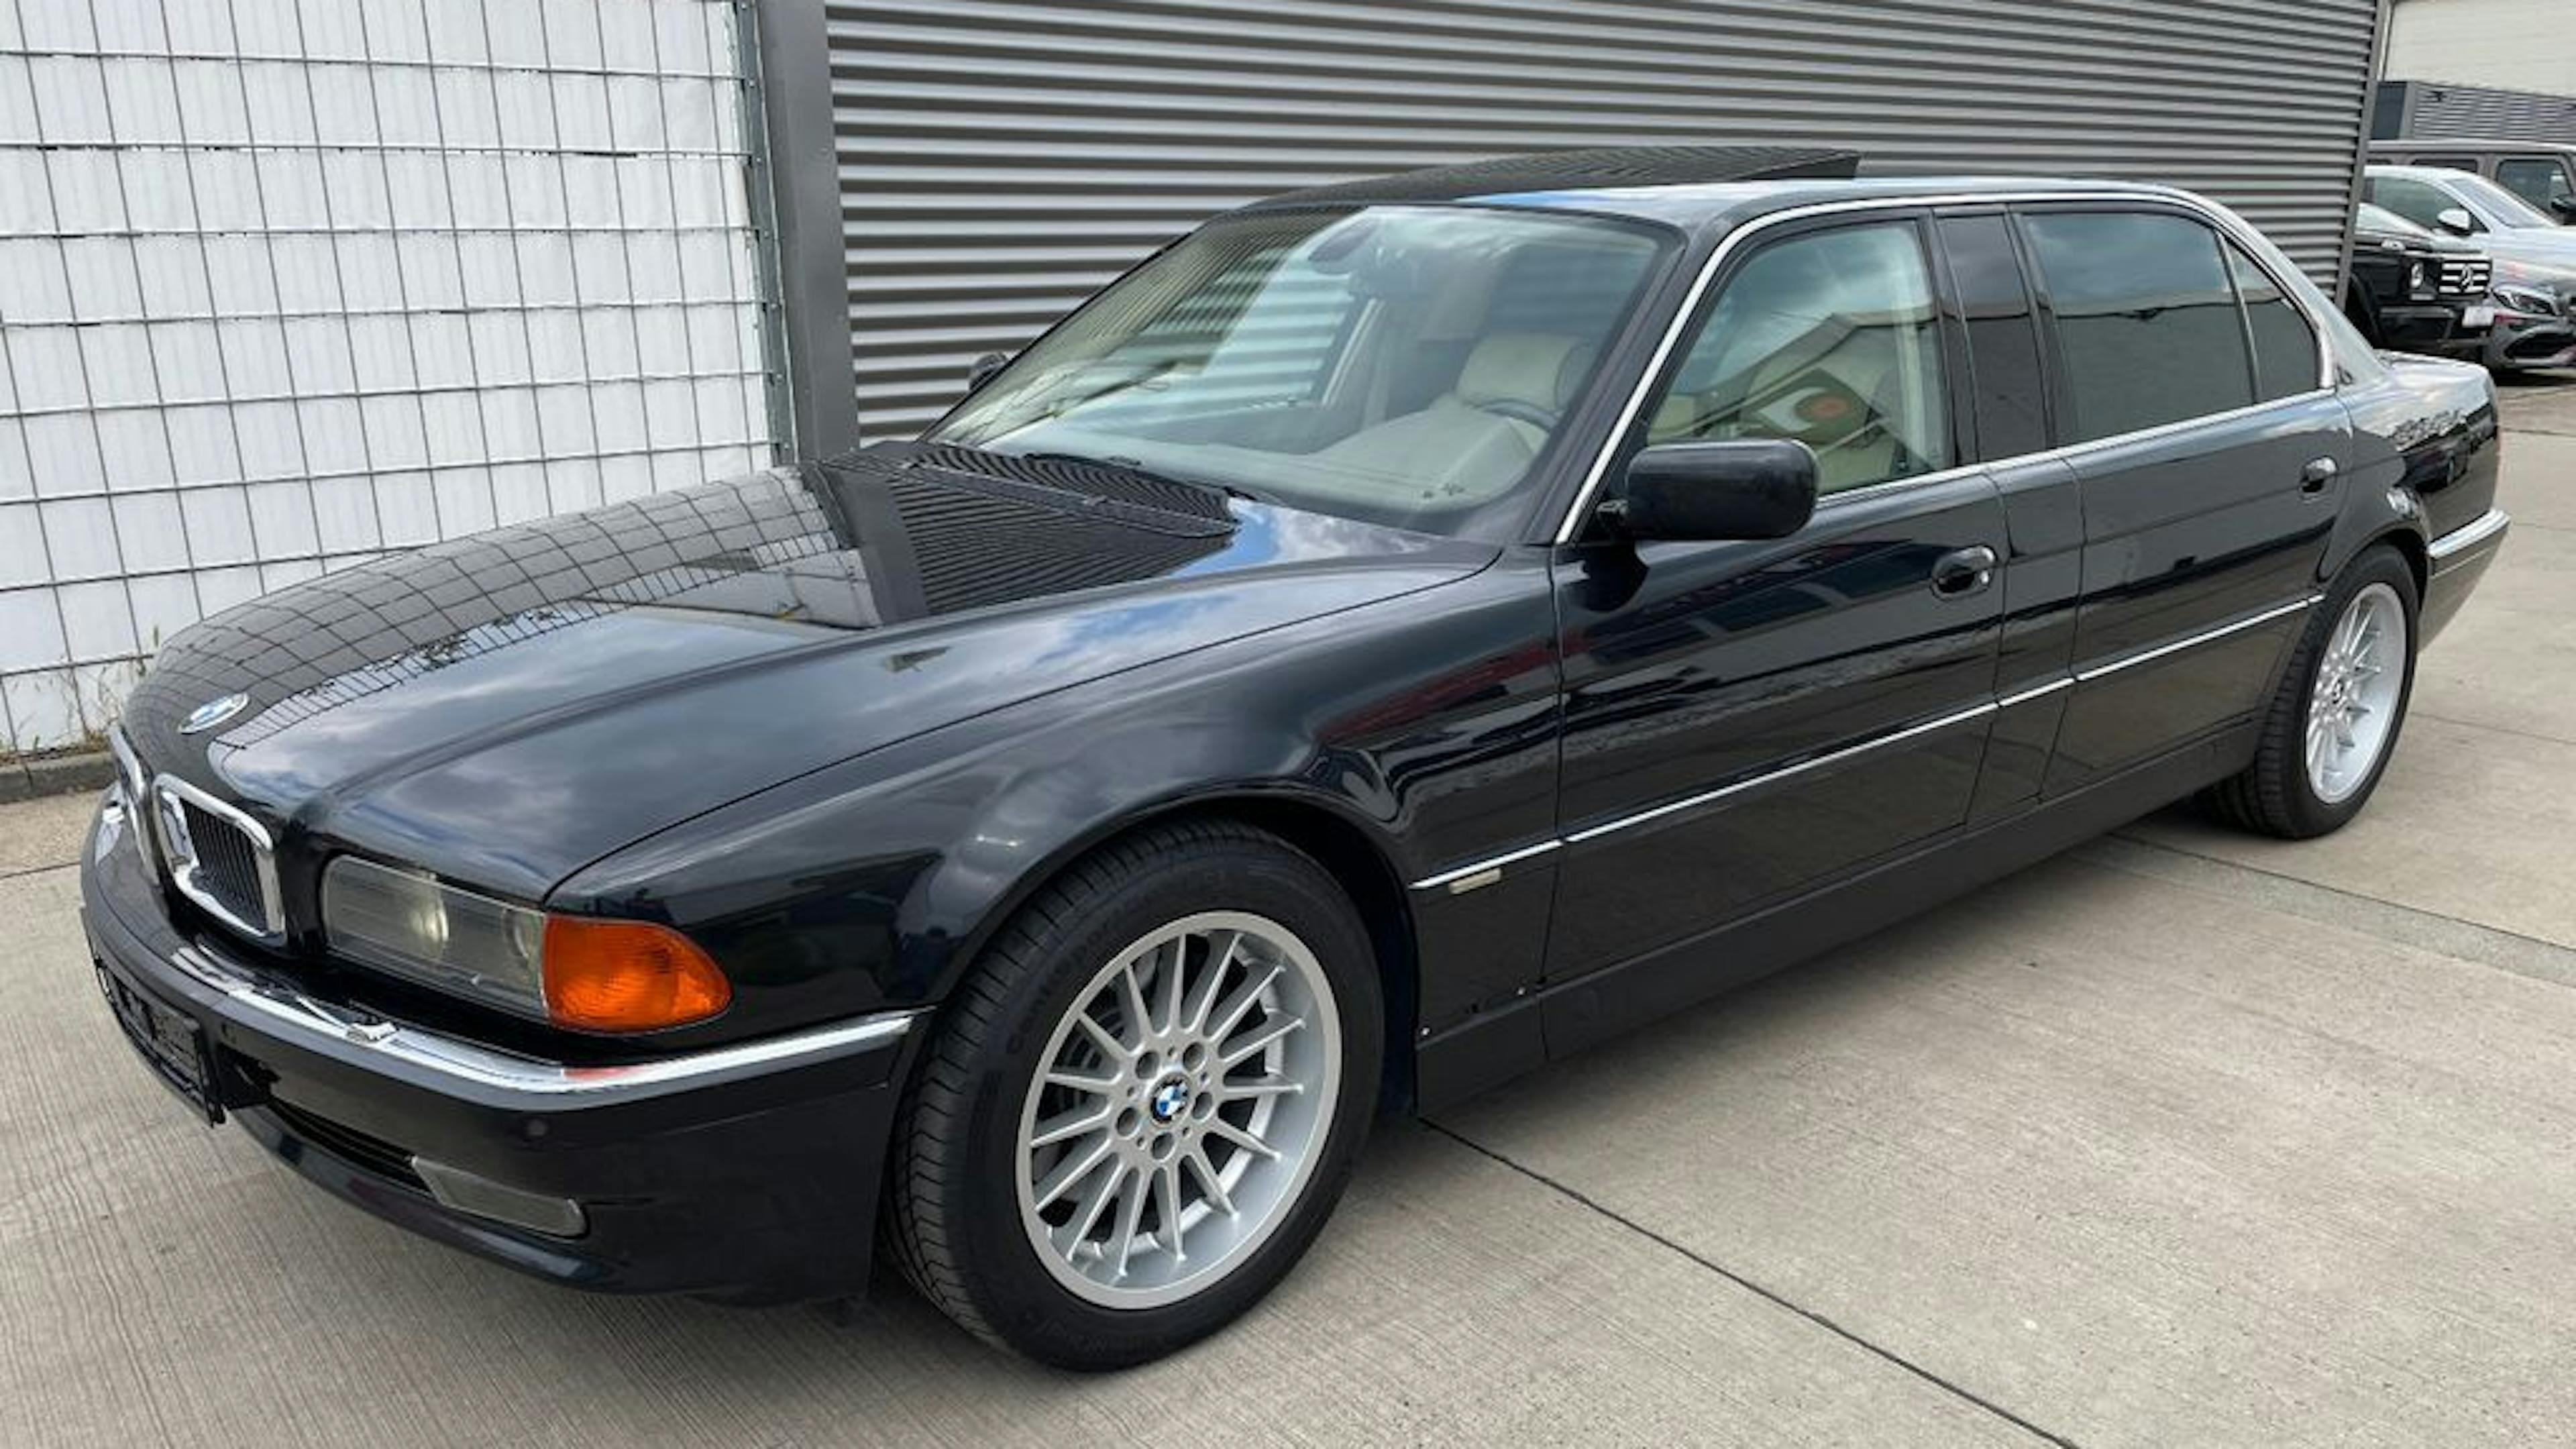 BMW 7er E38